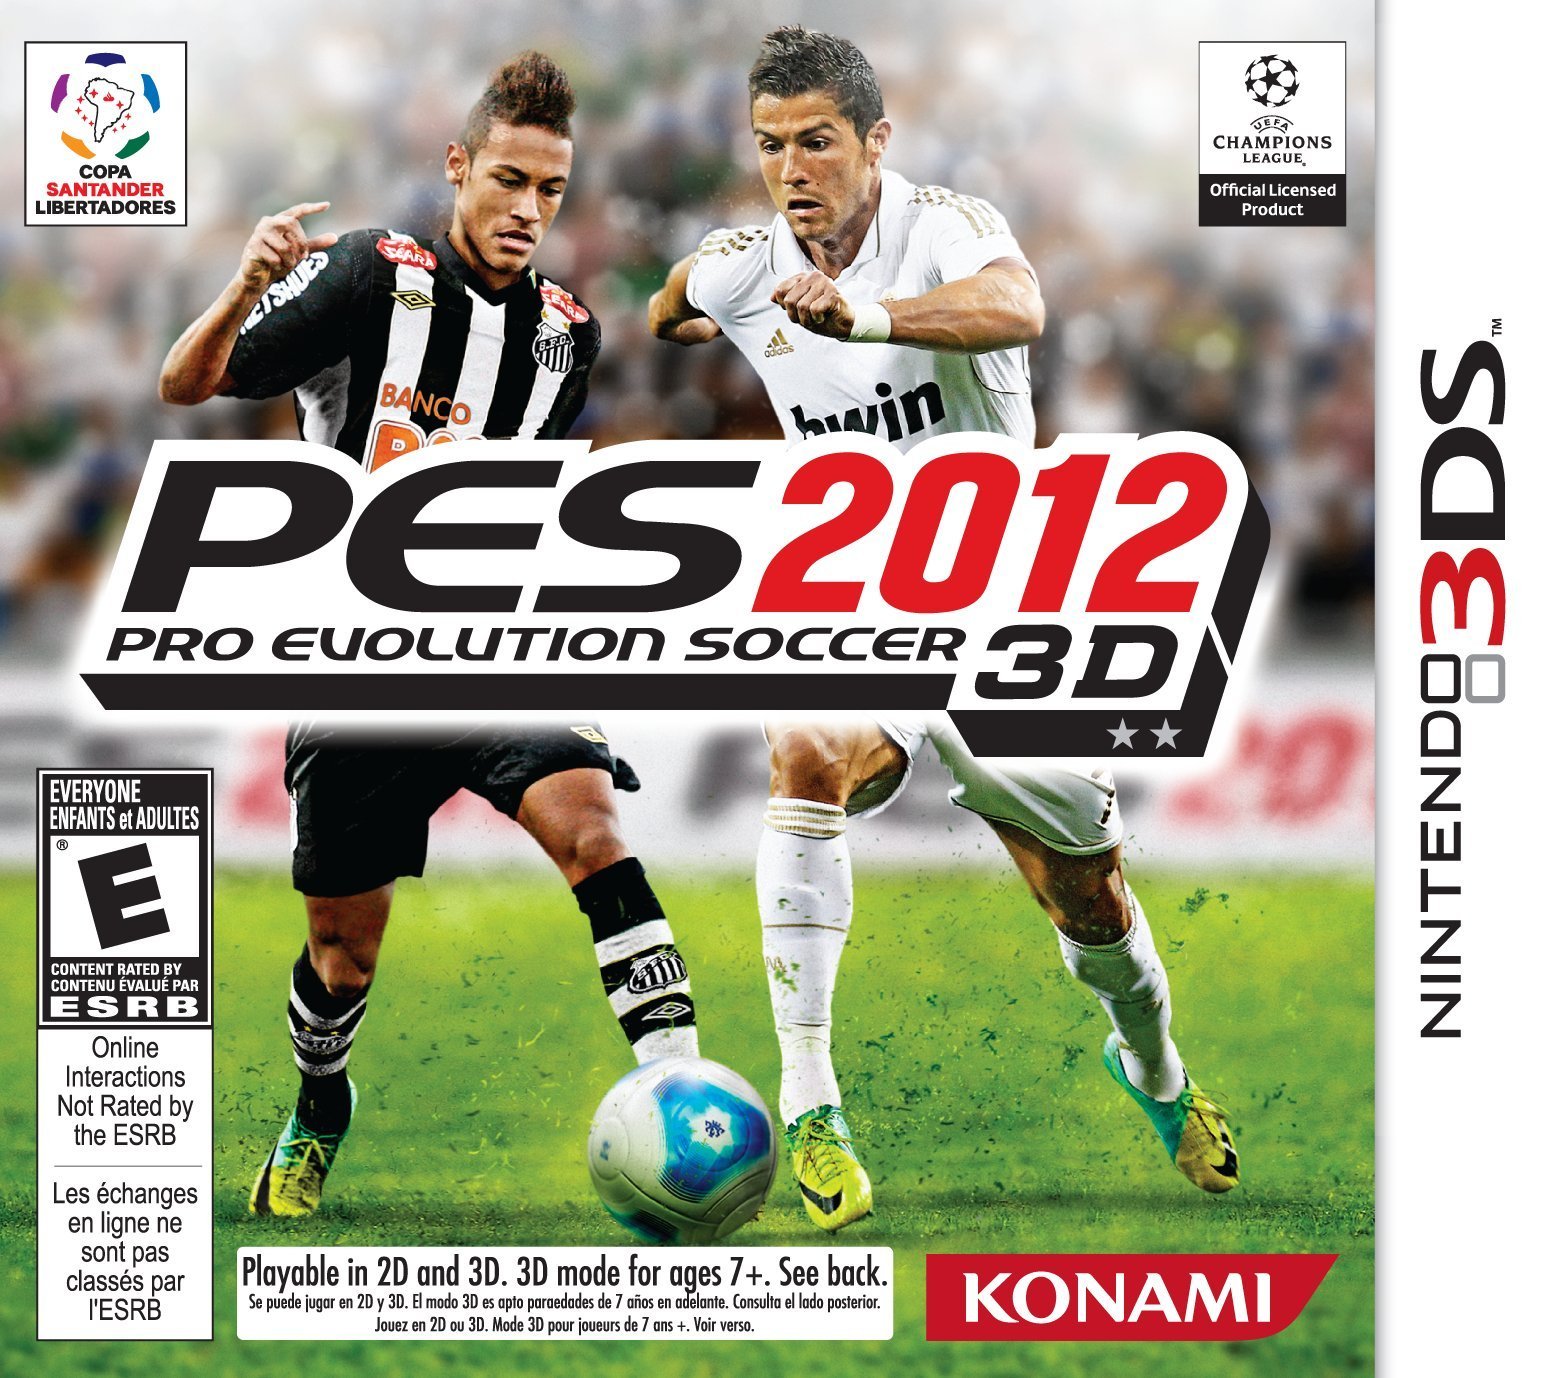 Image of Pro Evolution Soccer 2012 3D